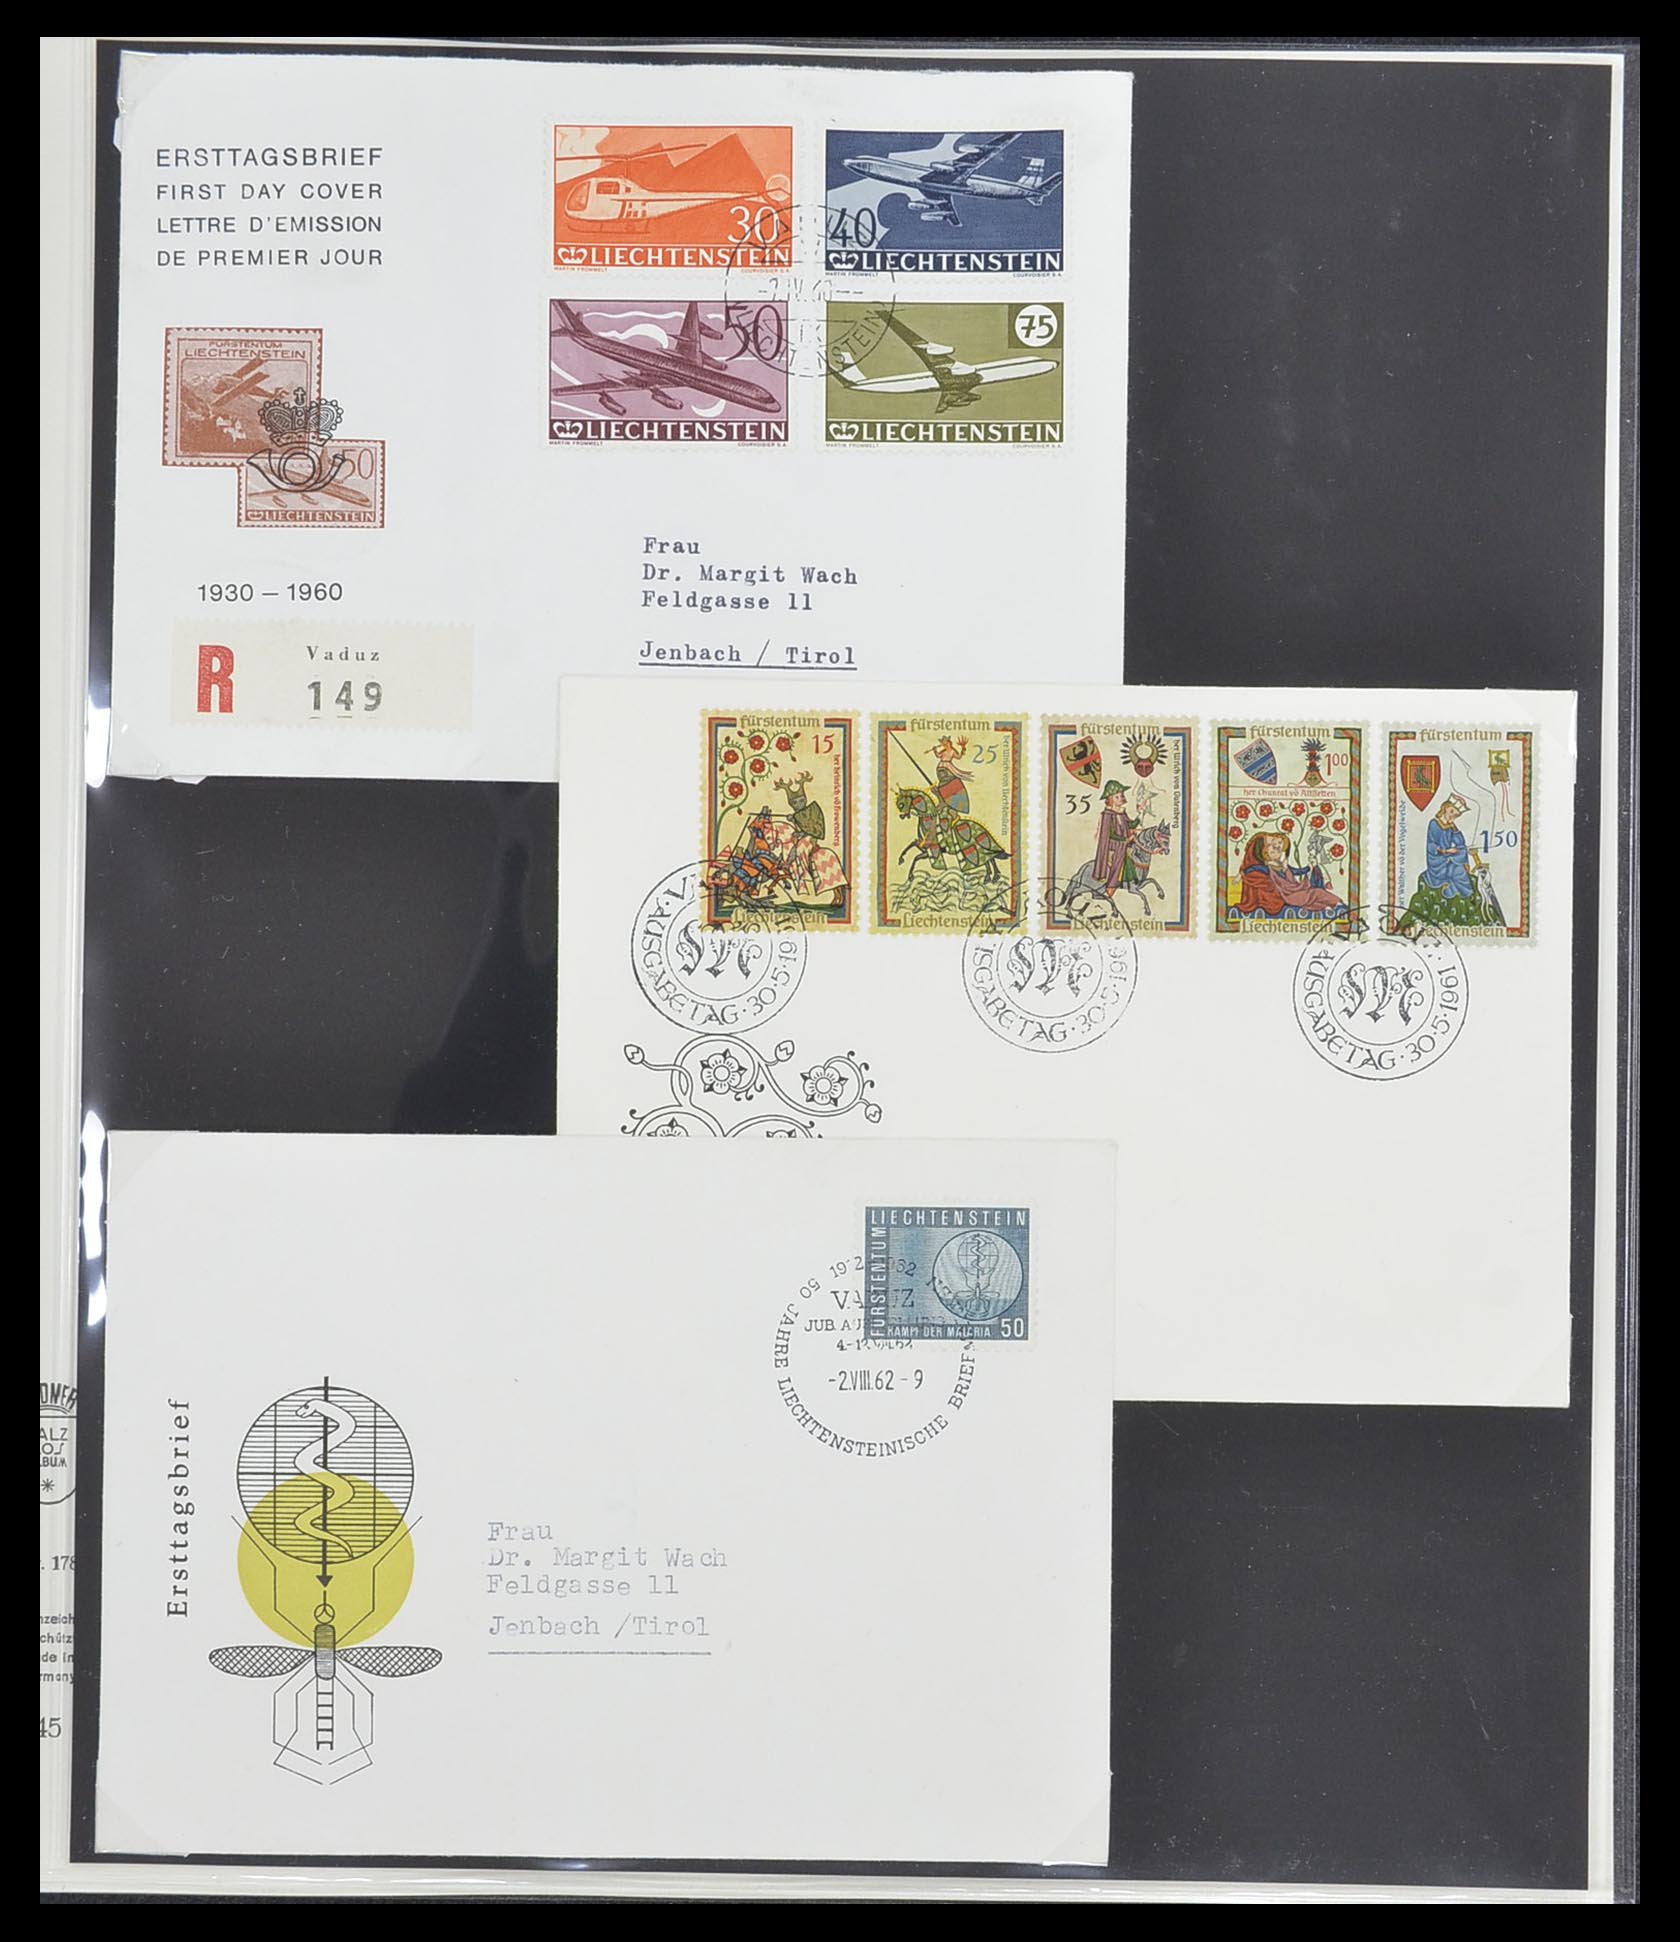 33493 073 - Stamp collection 33493 Liechtenstein 1912-2008.